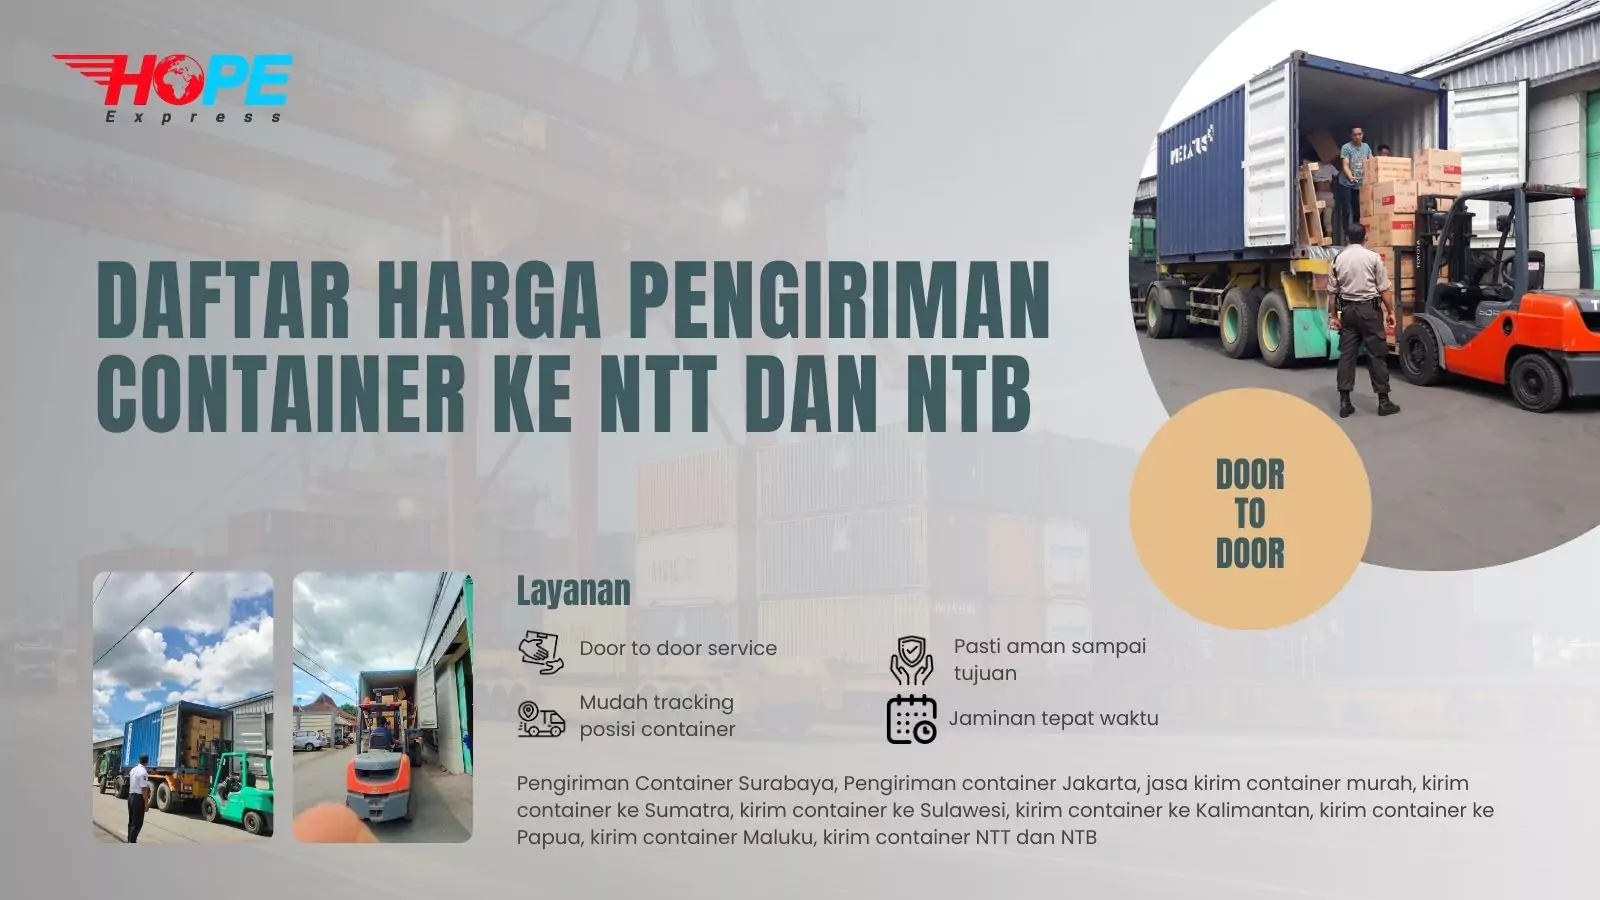 Daftar Harga Pengiriman Container ke NTT dan NTB